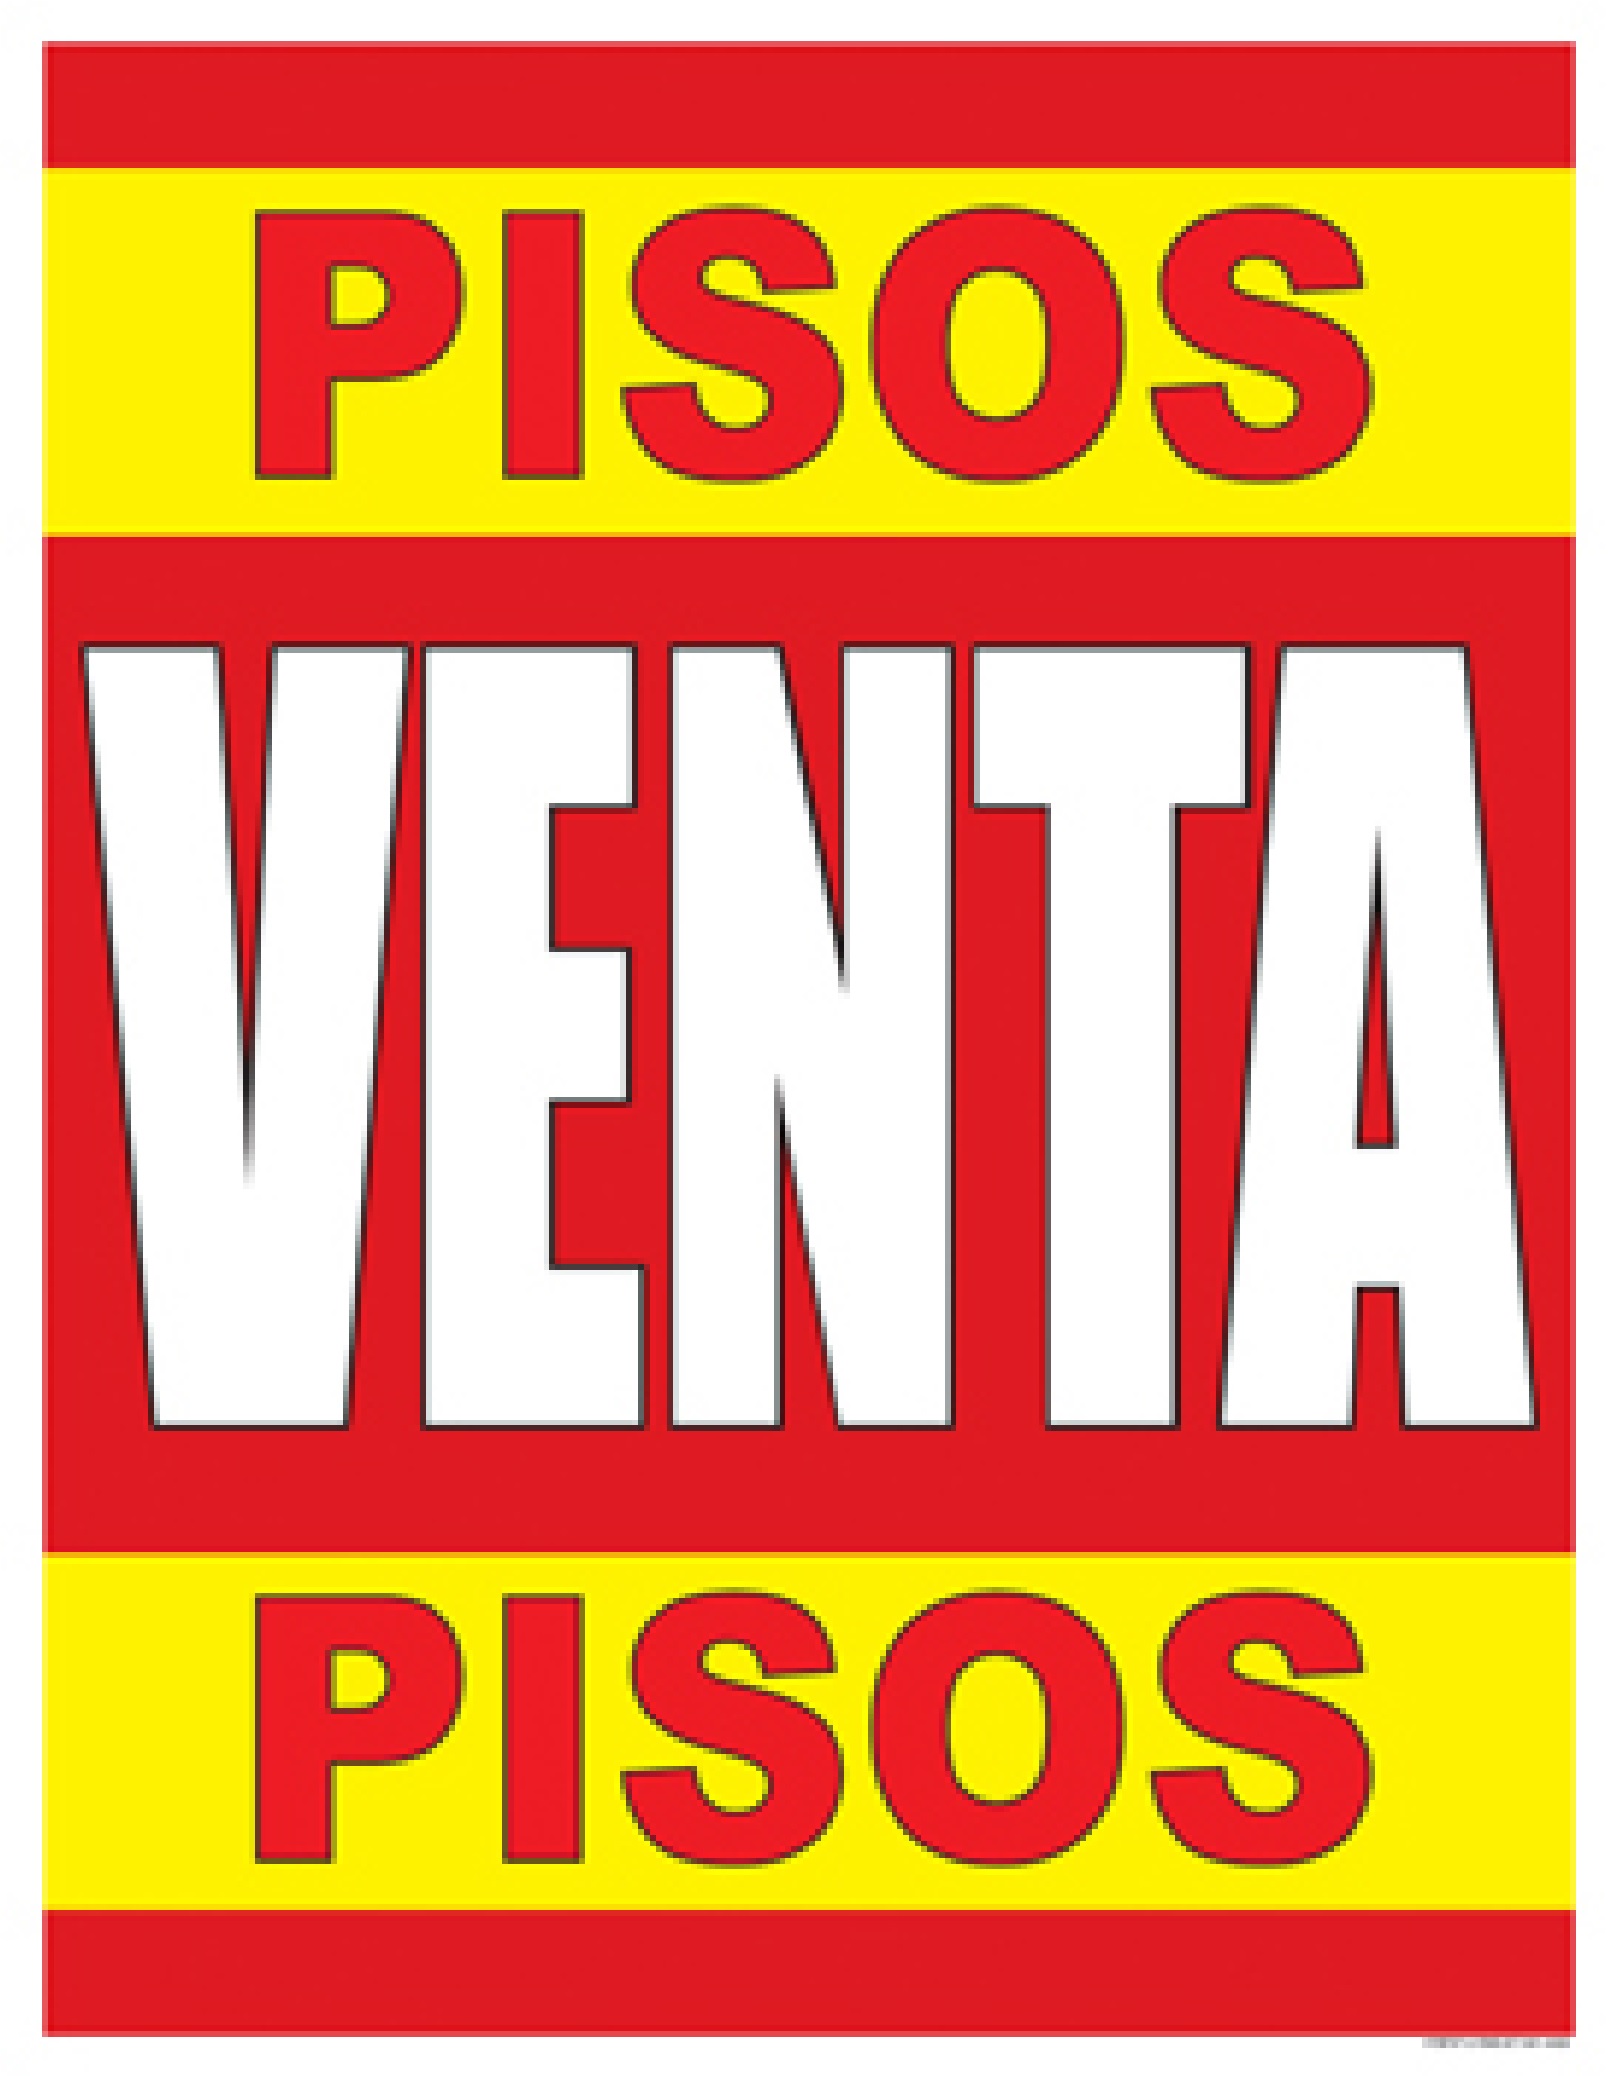 Pisos Venta Pisos SPANISH FLOORING SALE Window Poster Sign 22x28